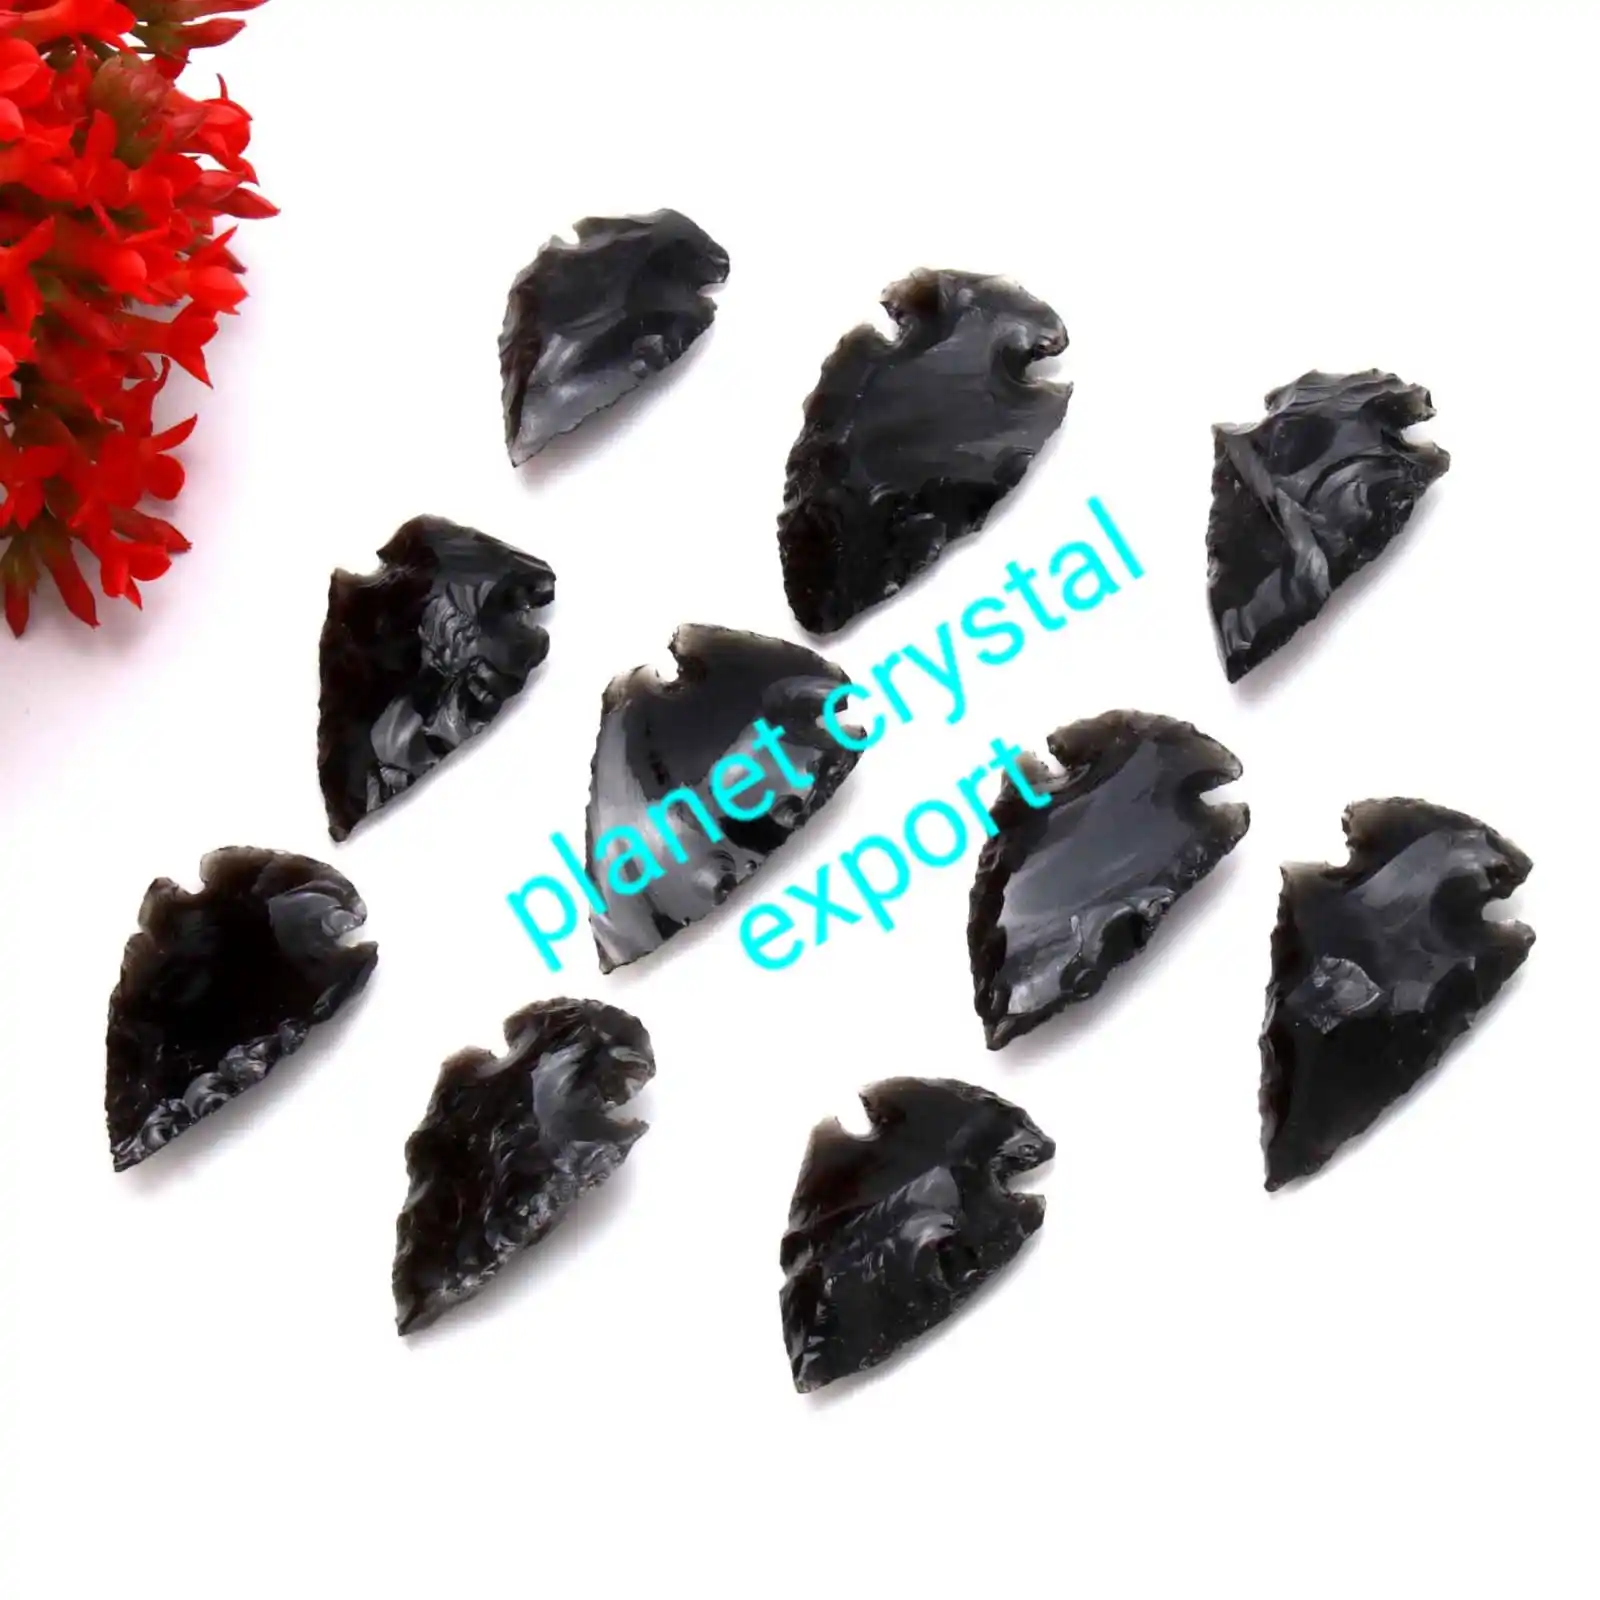 Black Obsidian Natural Agate Arrowheads Handmade Crystal Carving Gemstone Arrowhead